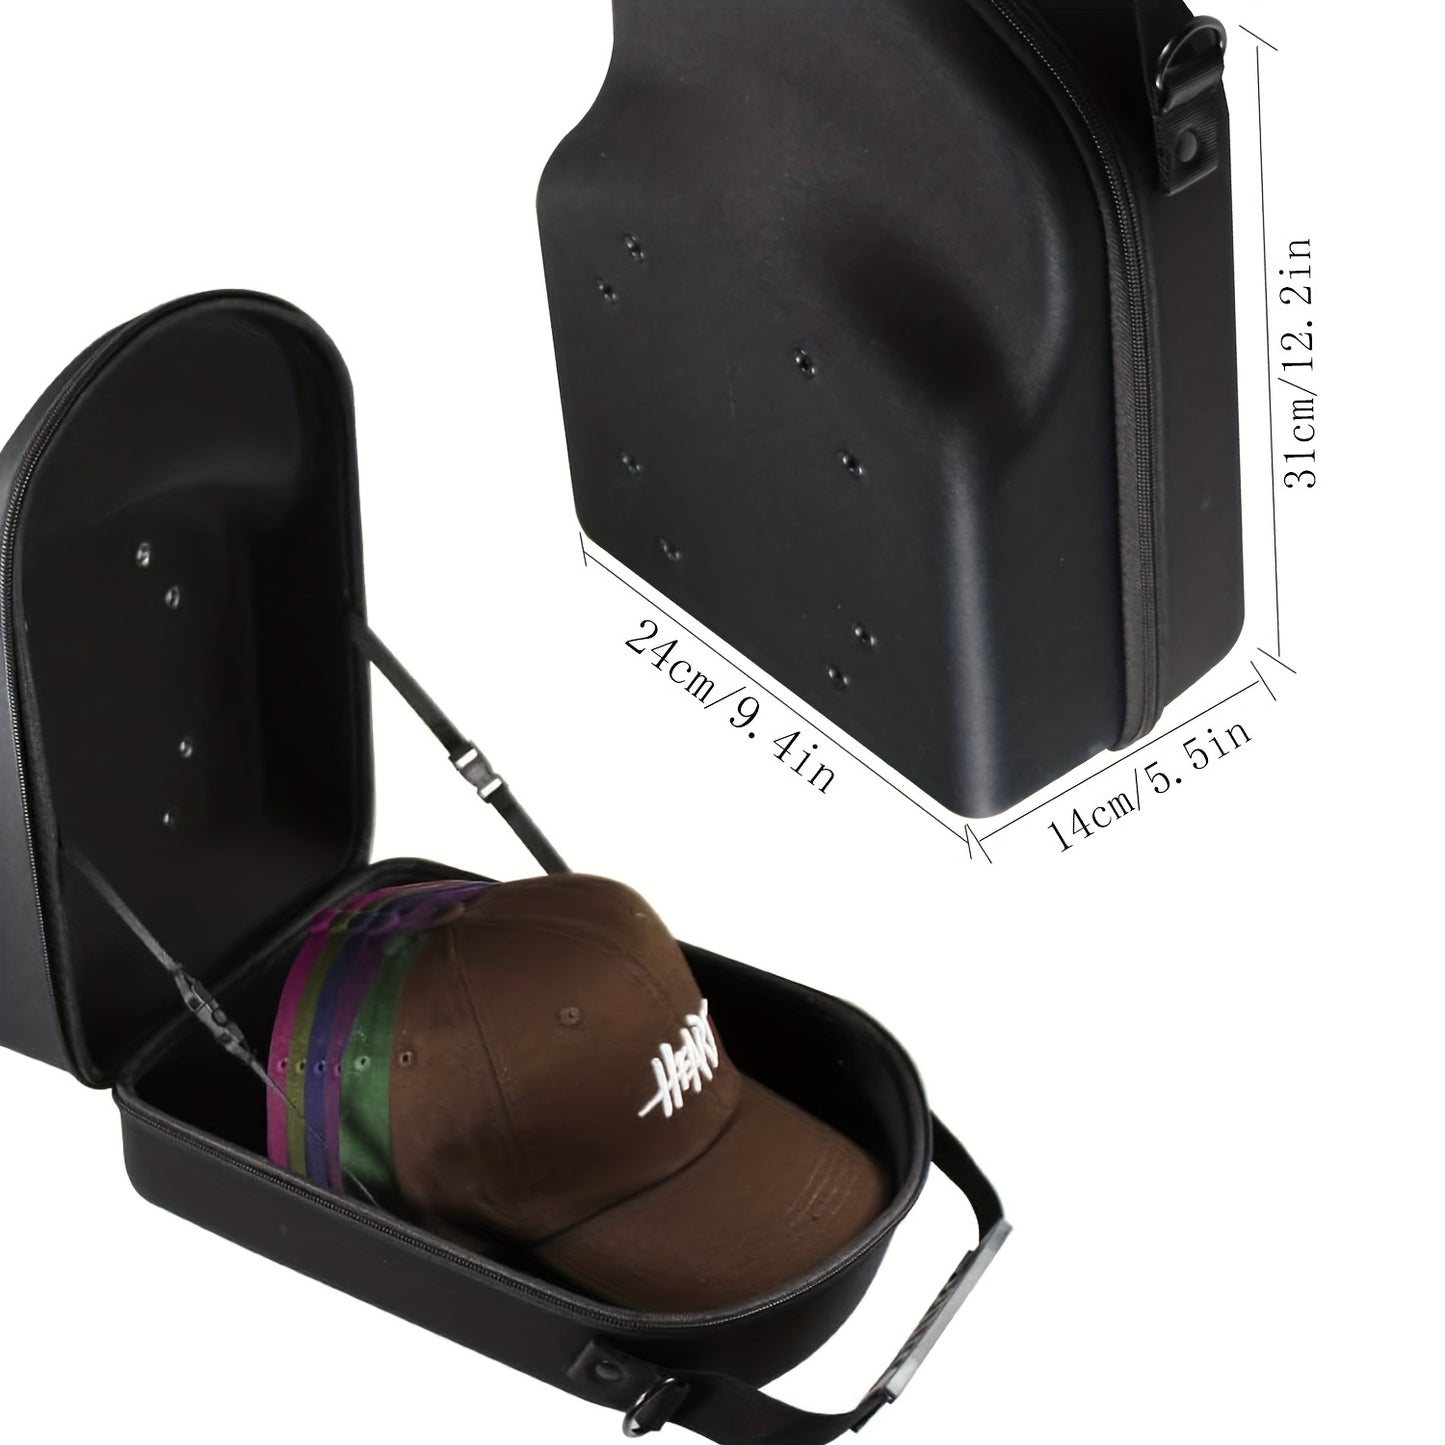 Black Hat Travel Case with Adjustable Strap - Durable Baseball Hat Storage Bag